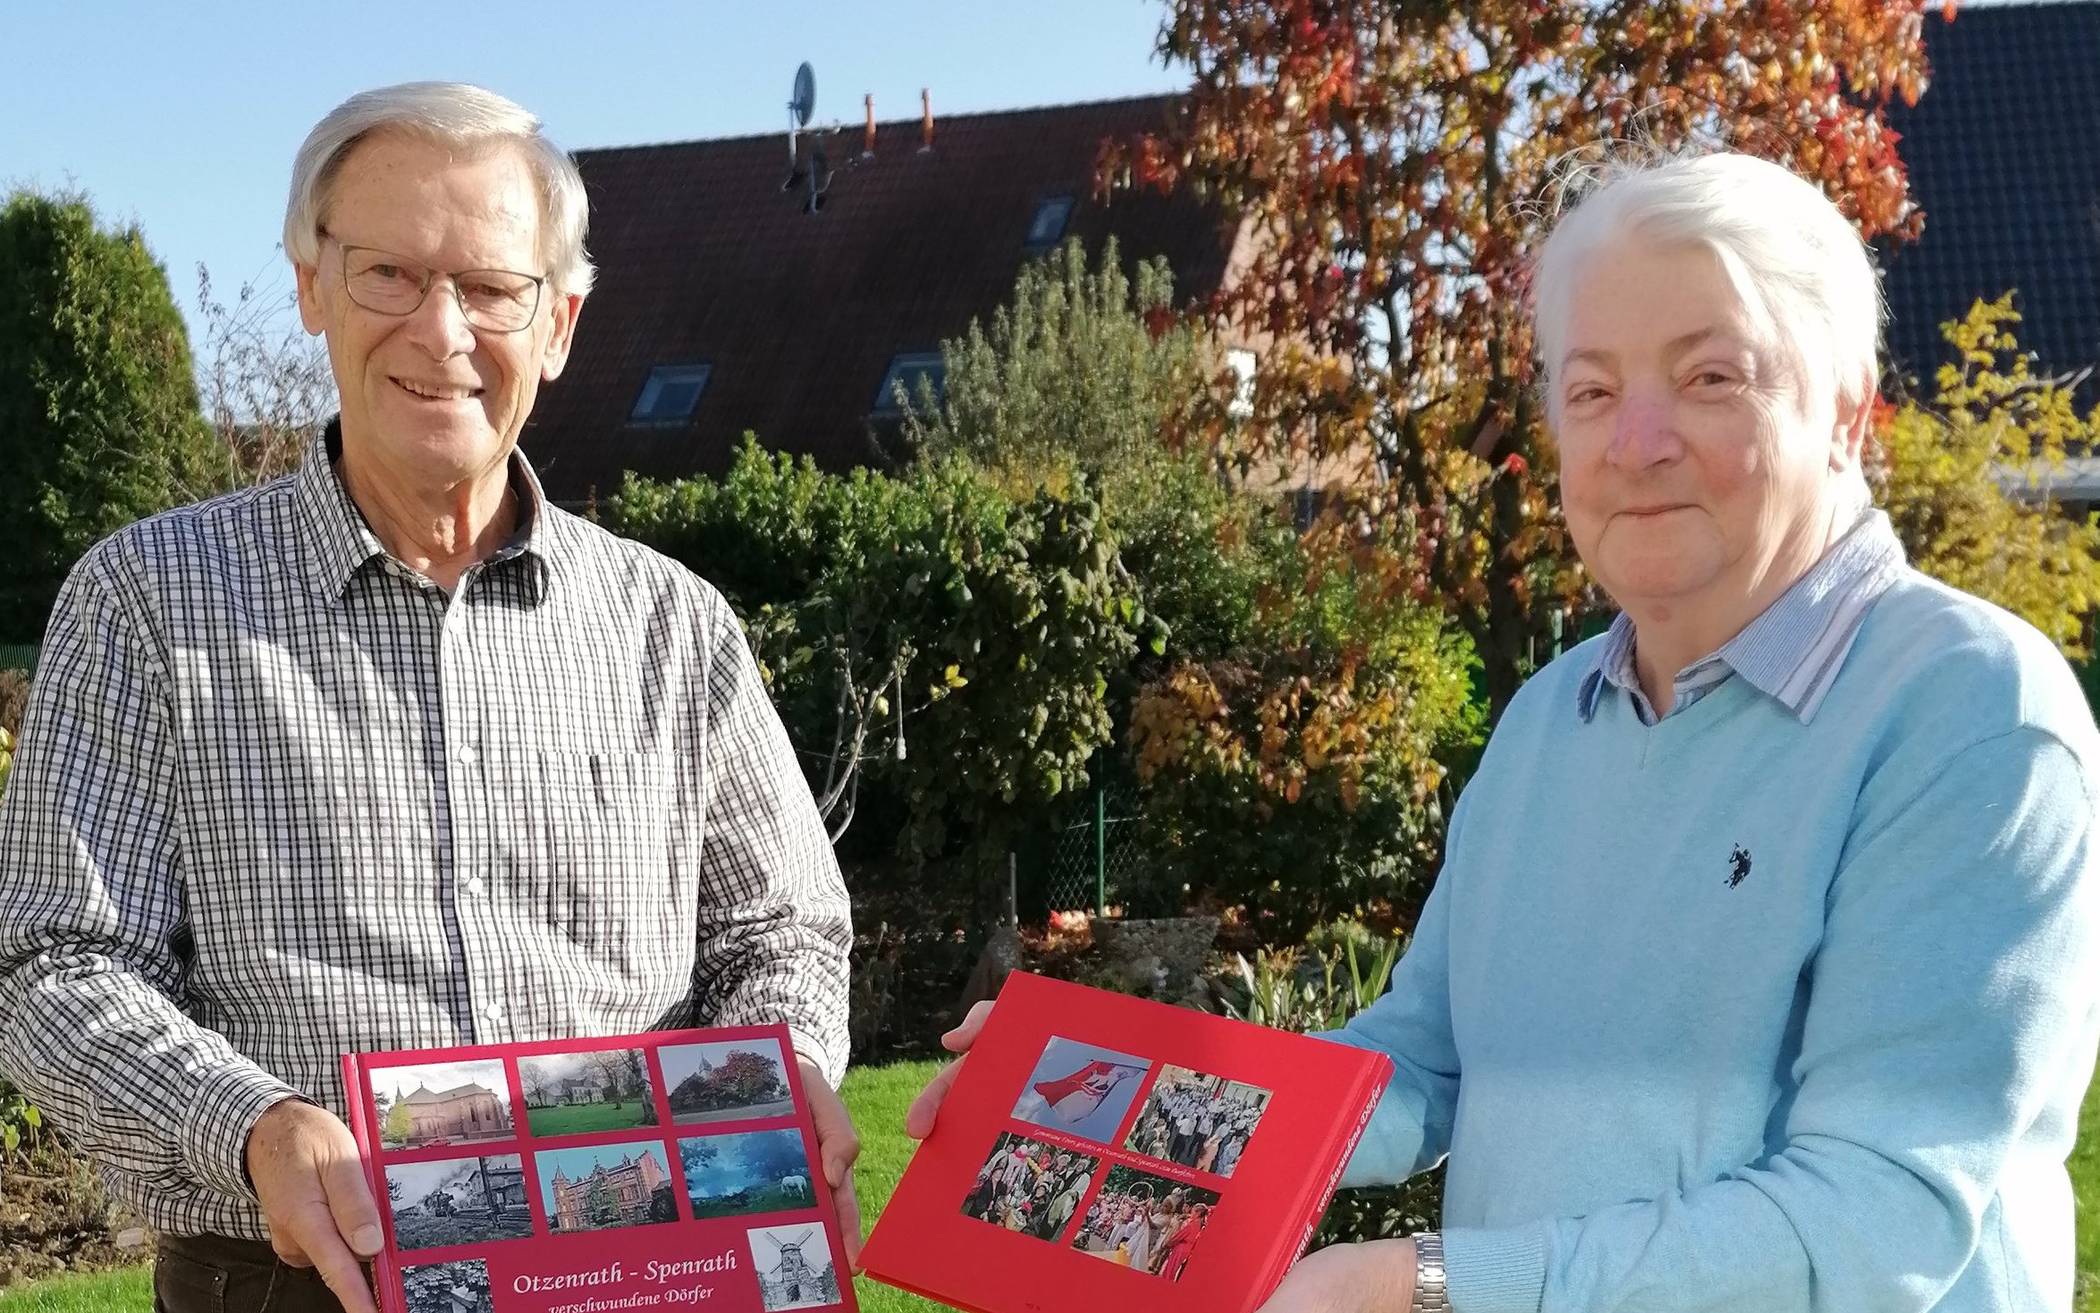  Gert Behr (links) und Konrad Eickels haben ein neues Buch über Alt-Otzenrath herausgegeben.  